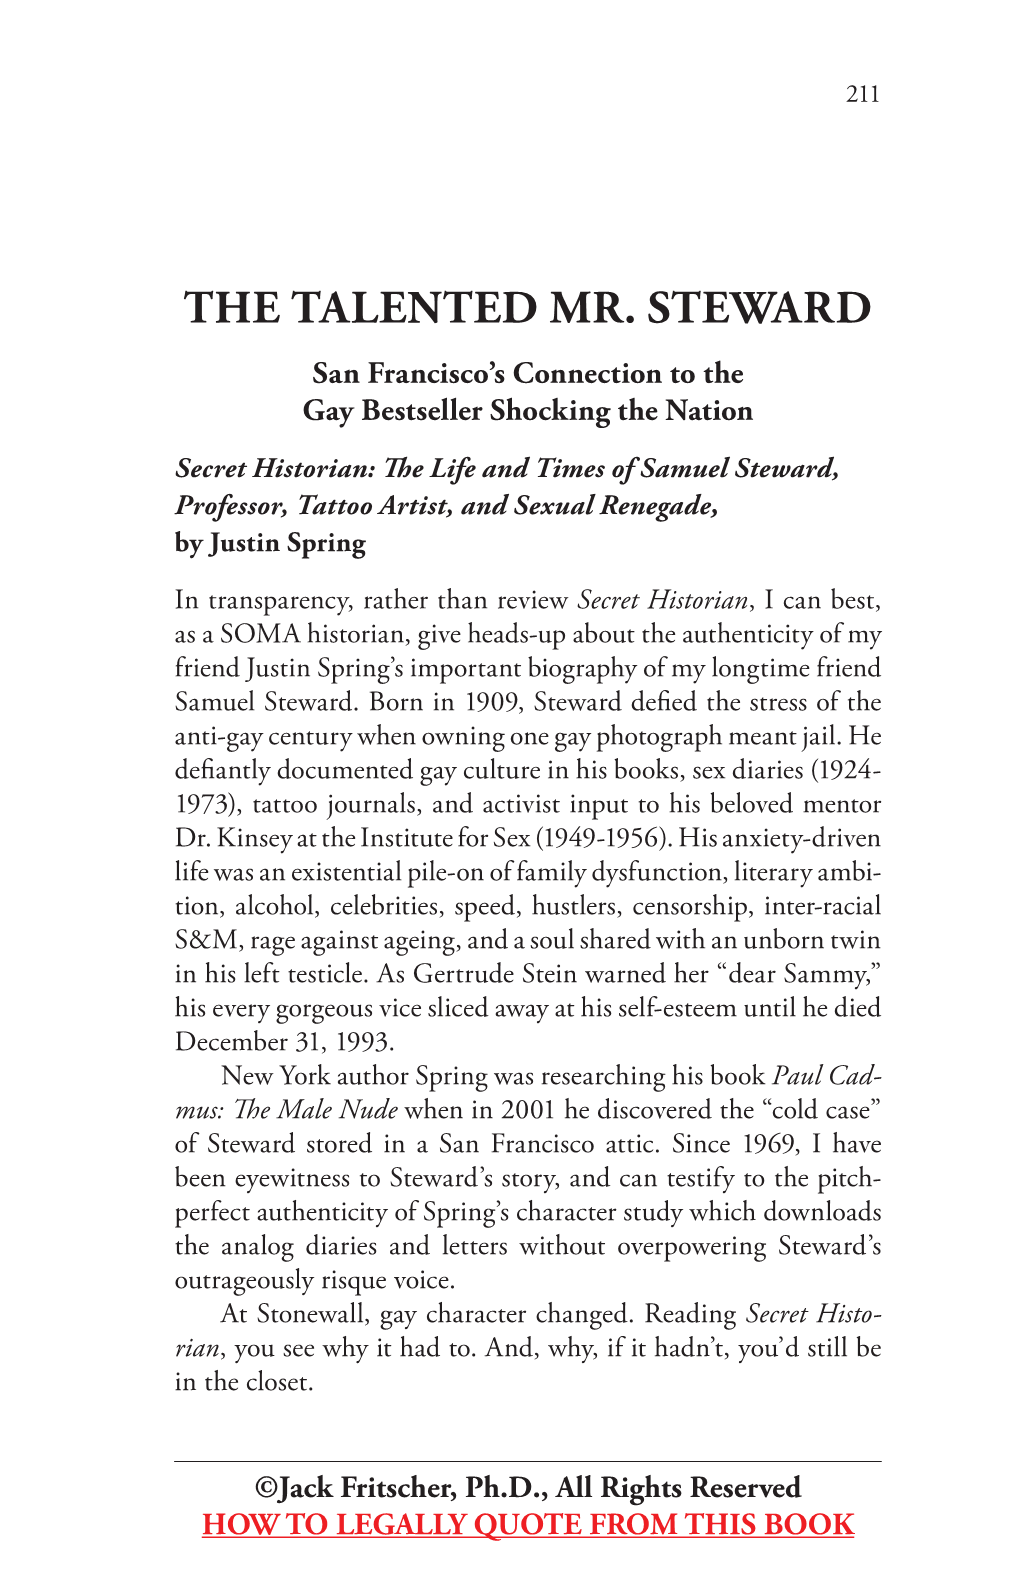 Sam Steward Was a Bon-Vivant Chum Whose Life, Like Chris- Topher Isherwood’S, Was a Cabaret